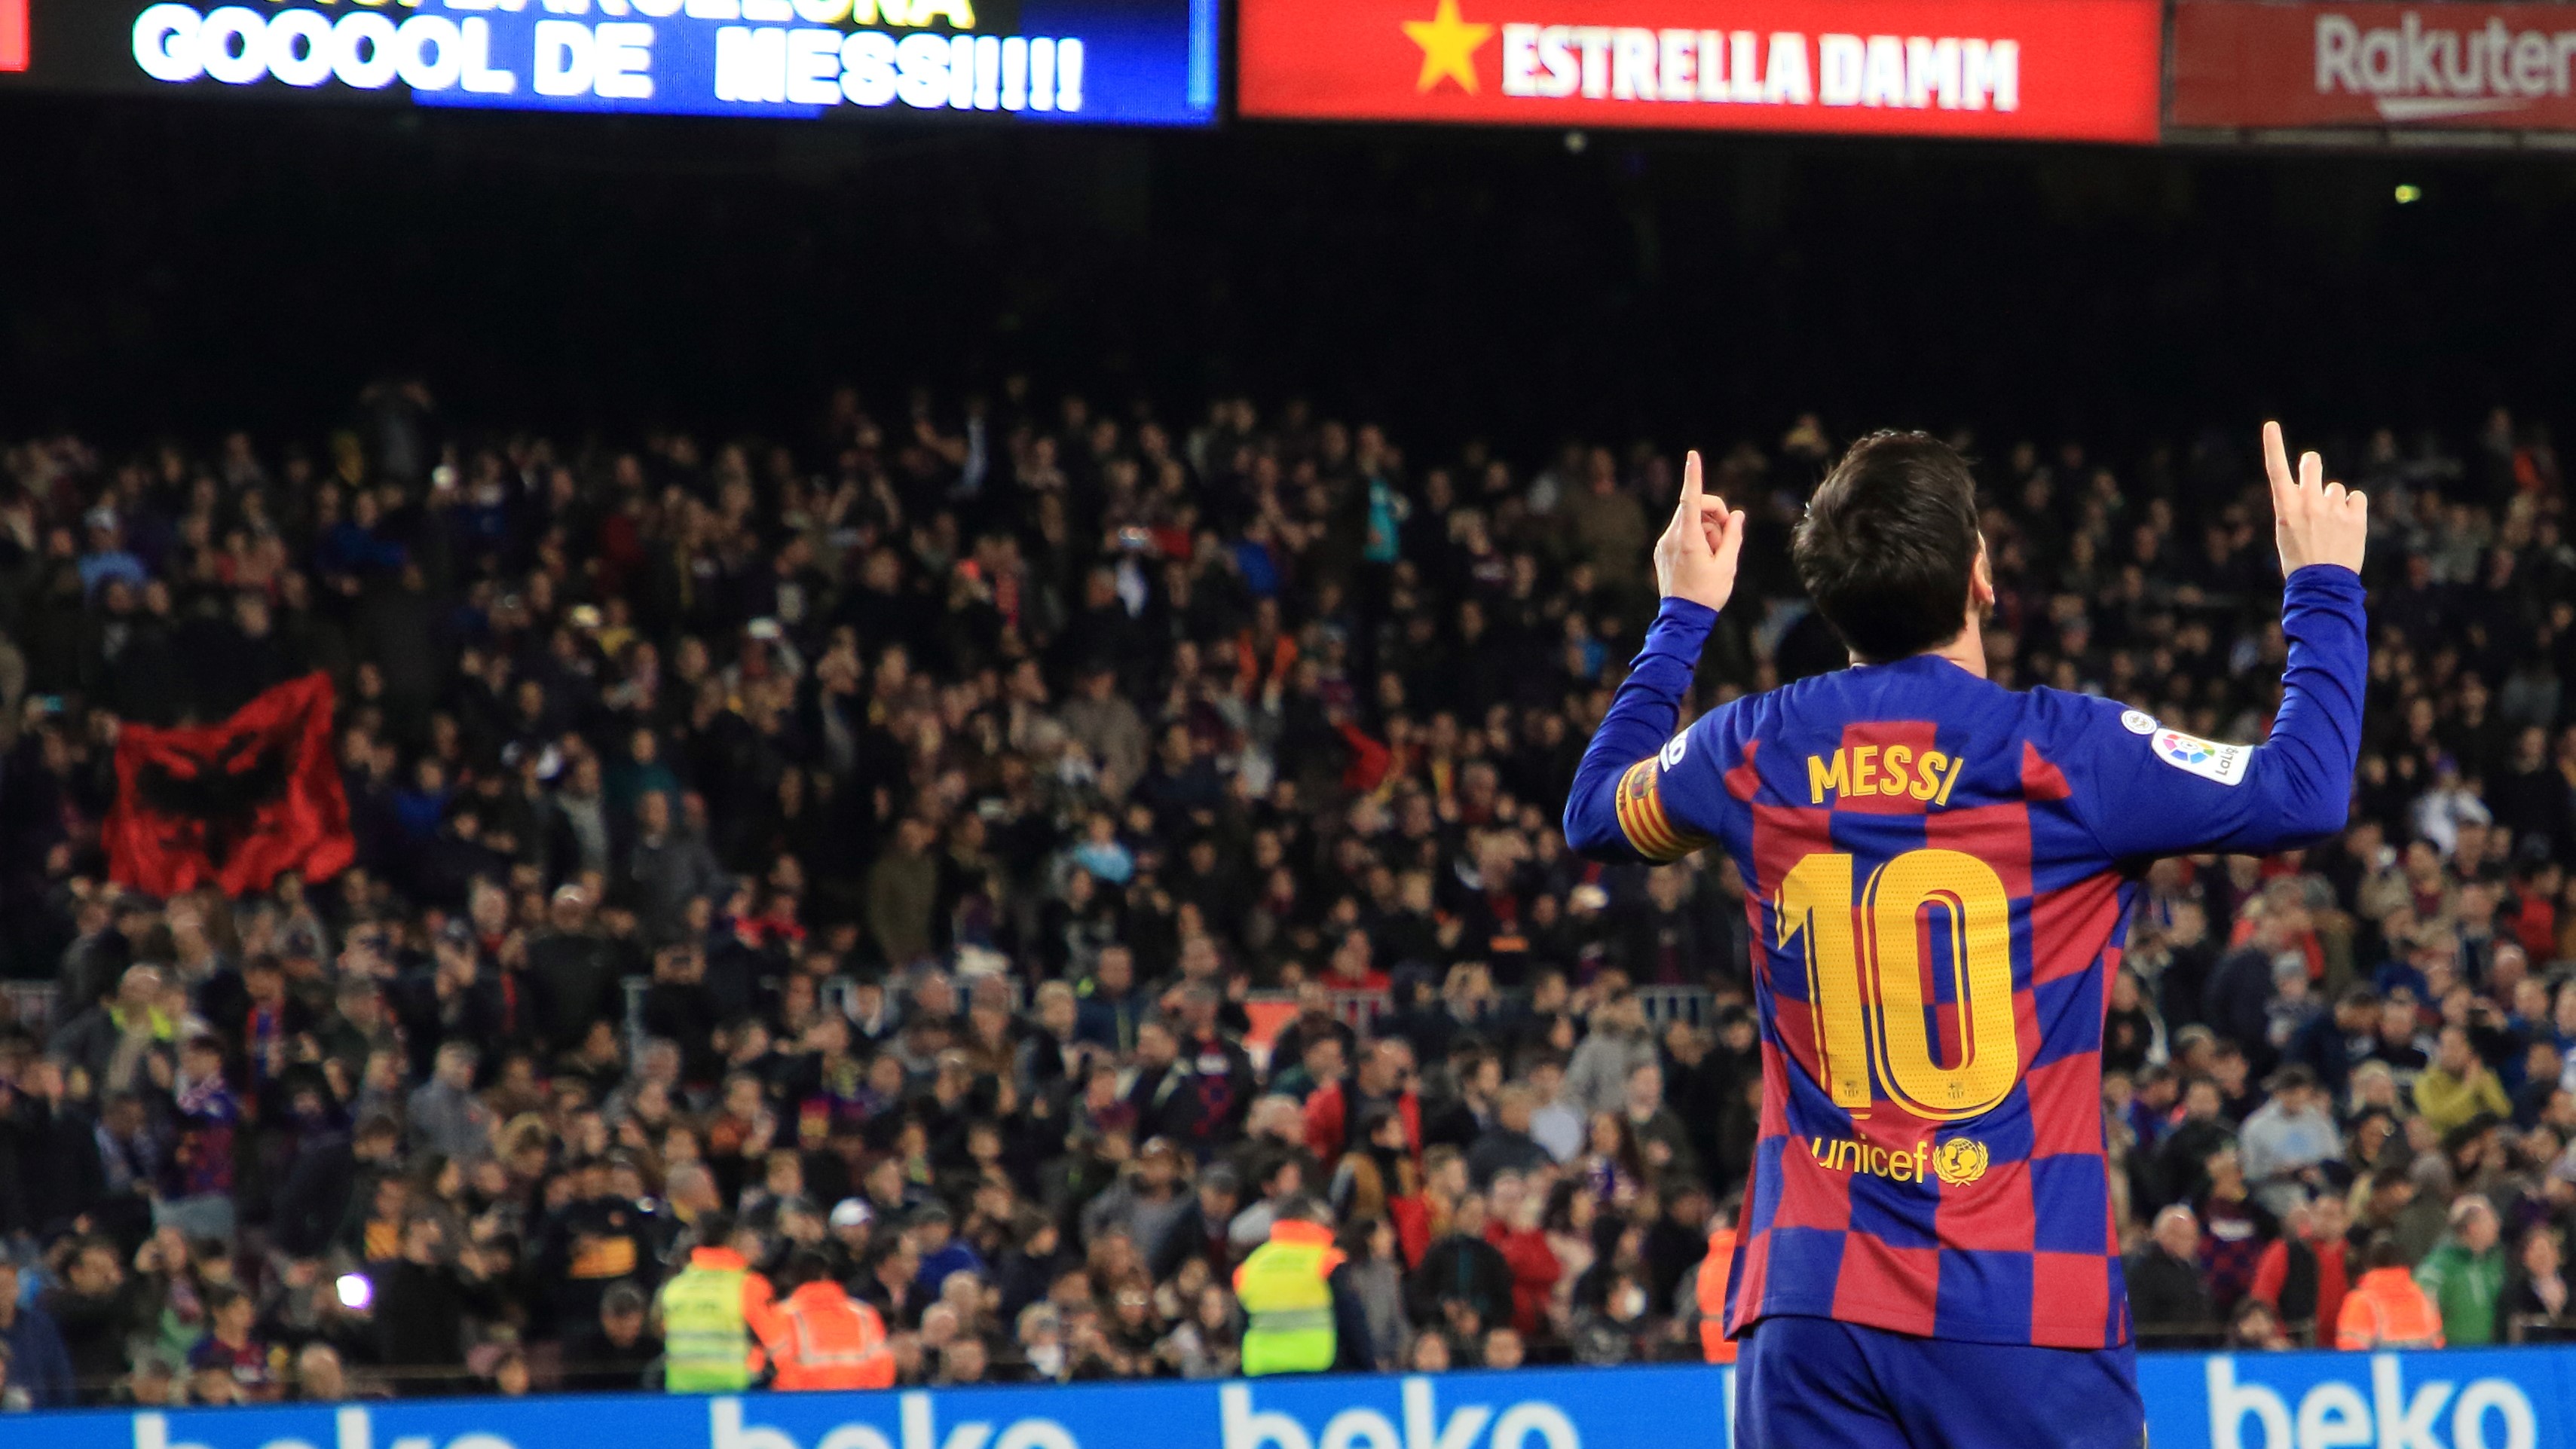 Makna Tersembunyi di Balik Selebrasi Seorang Lionel Messi